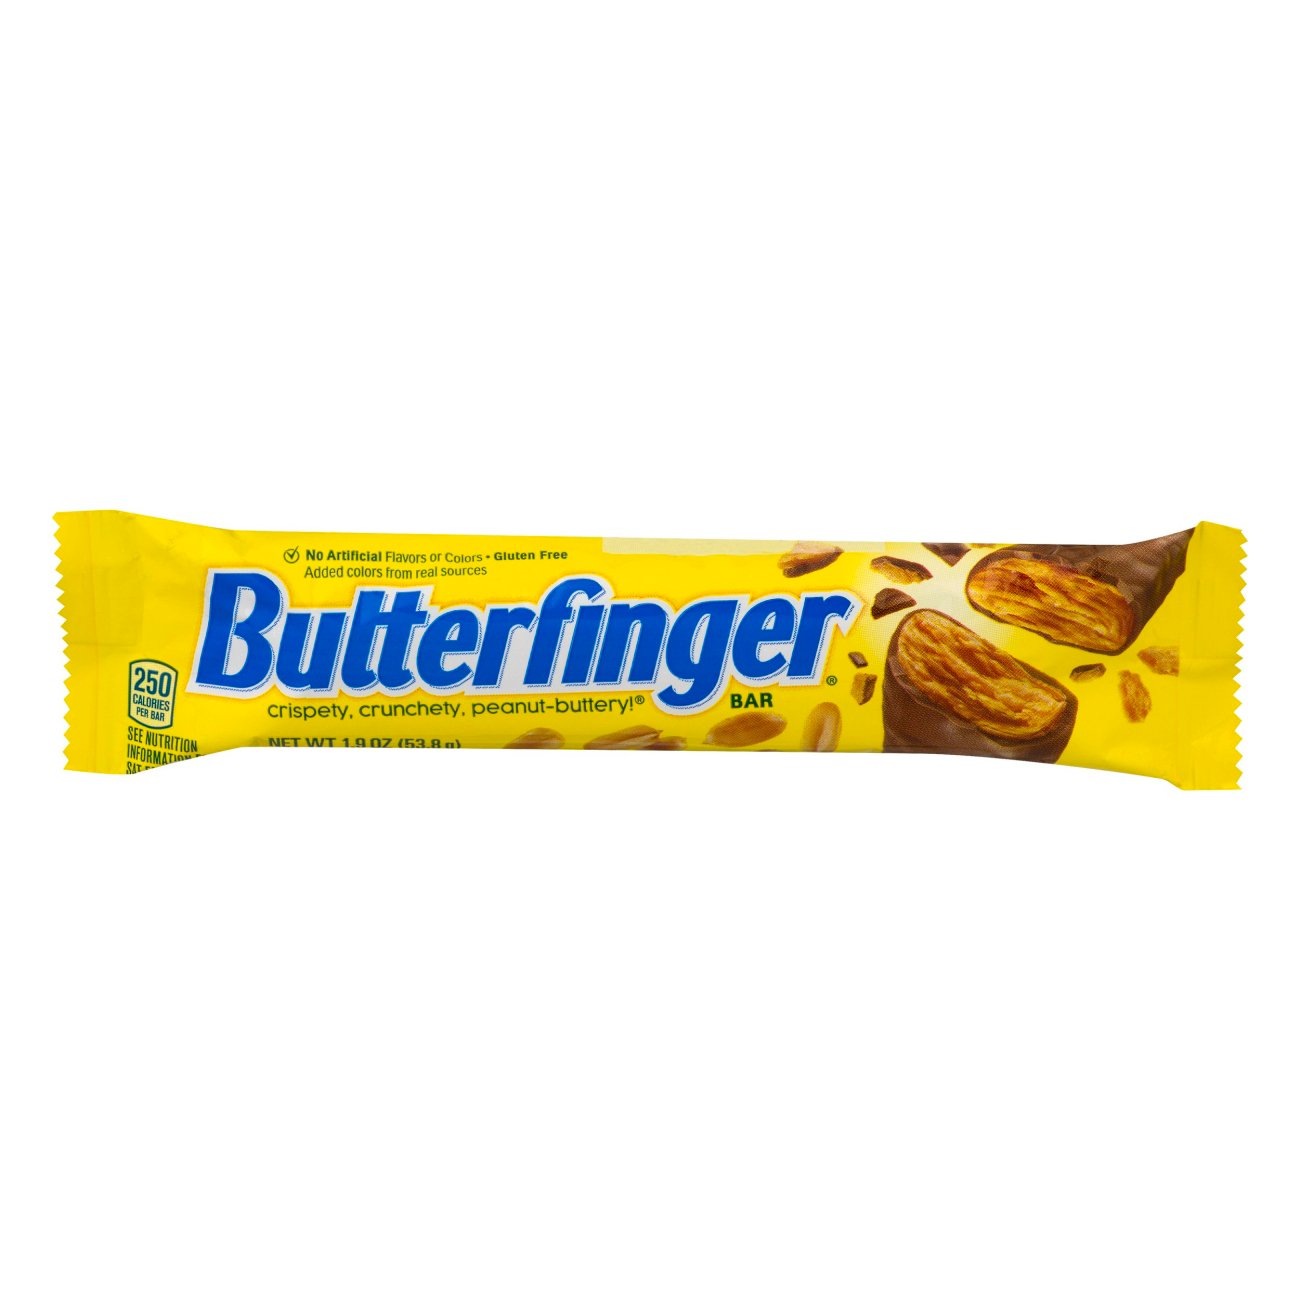 8. Butterfinger